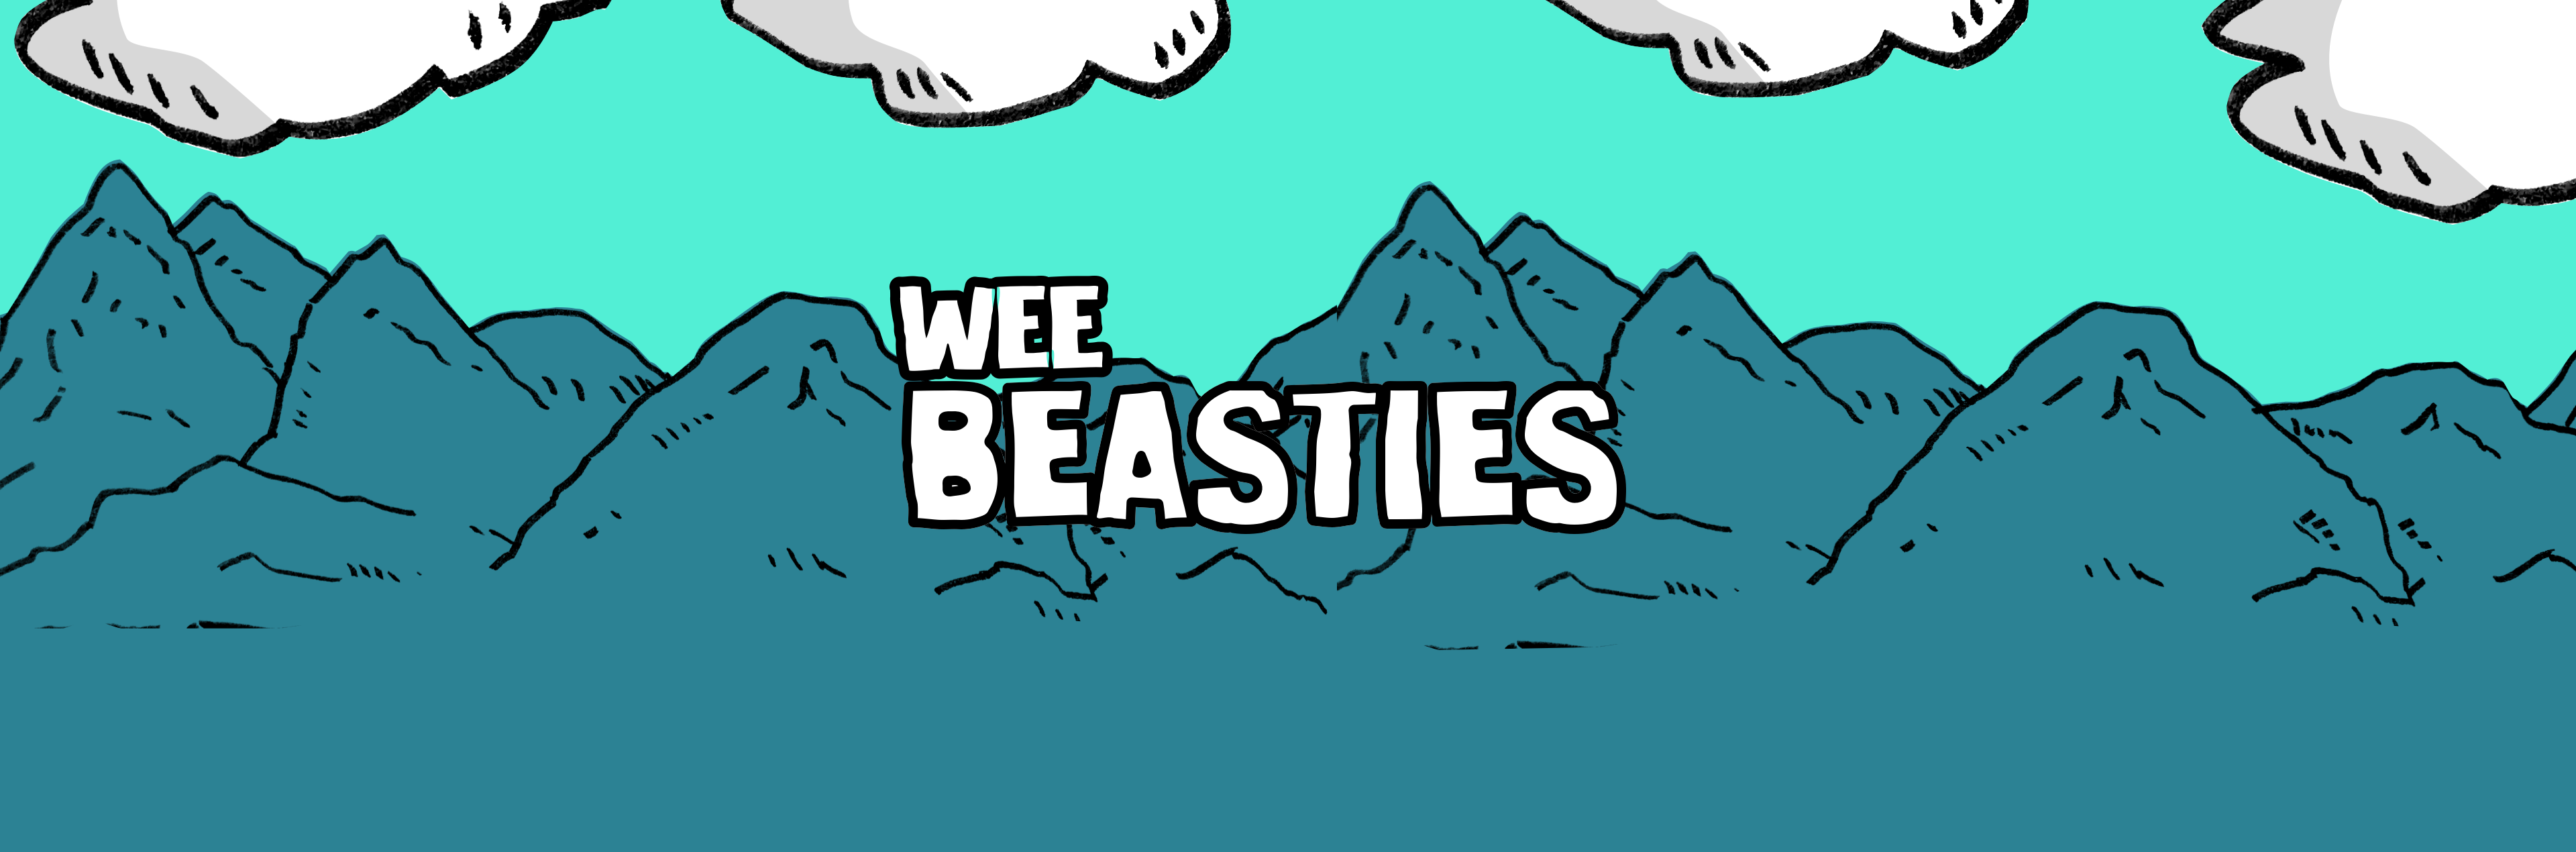 Wee Beasties (prototype)